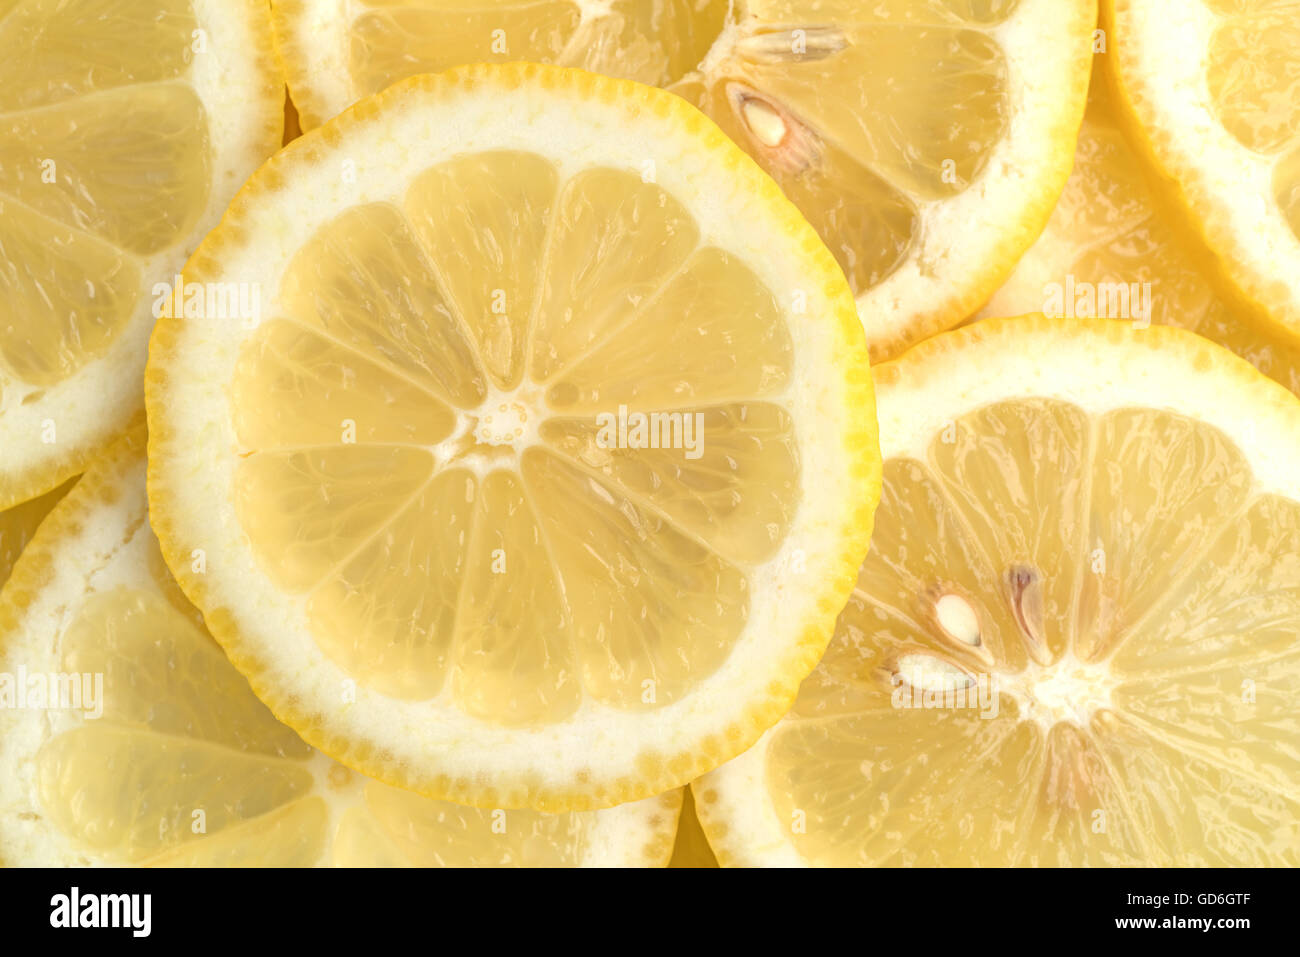 Chiudere la vista di una delle fette di limone fresco. Foto Stock